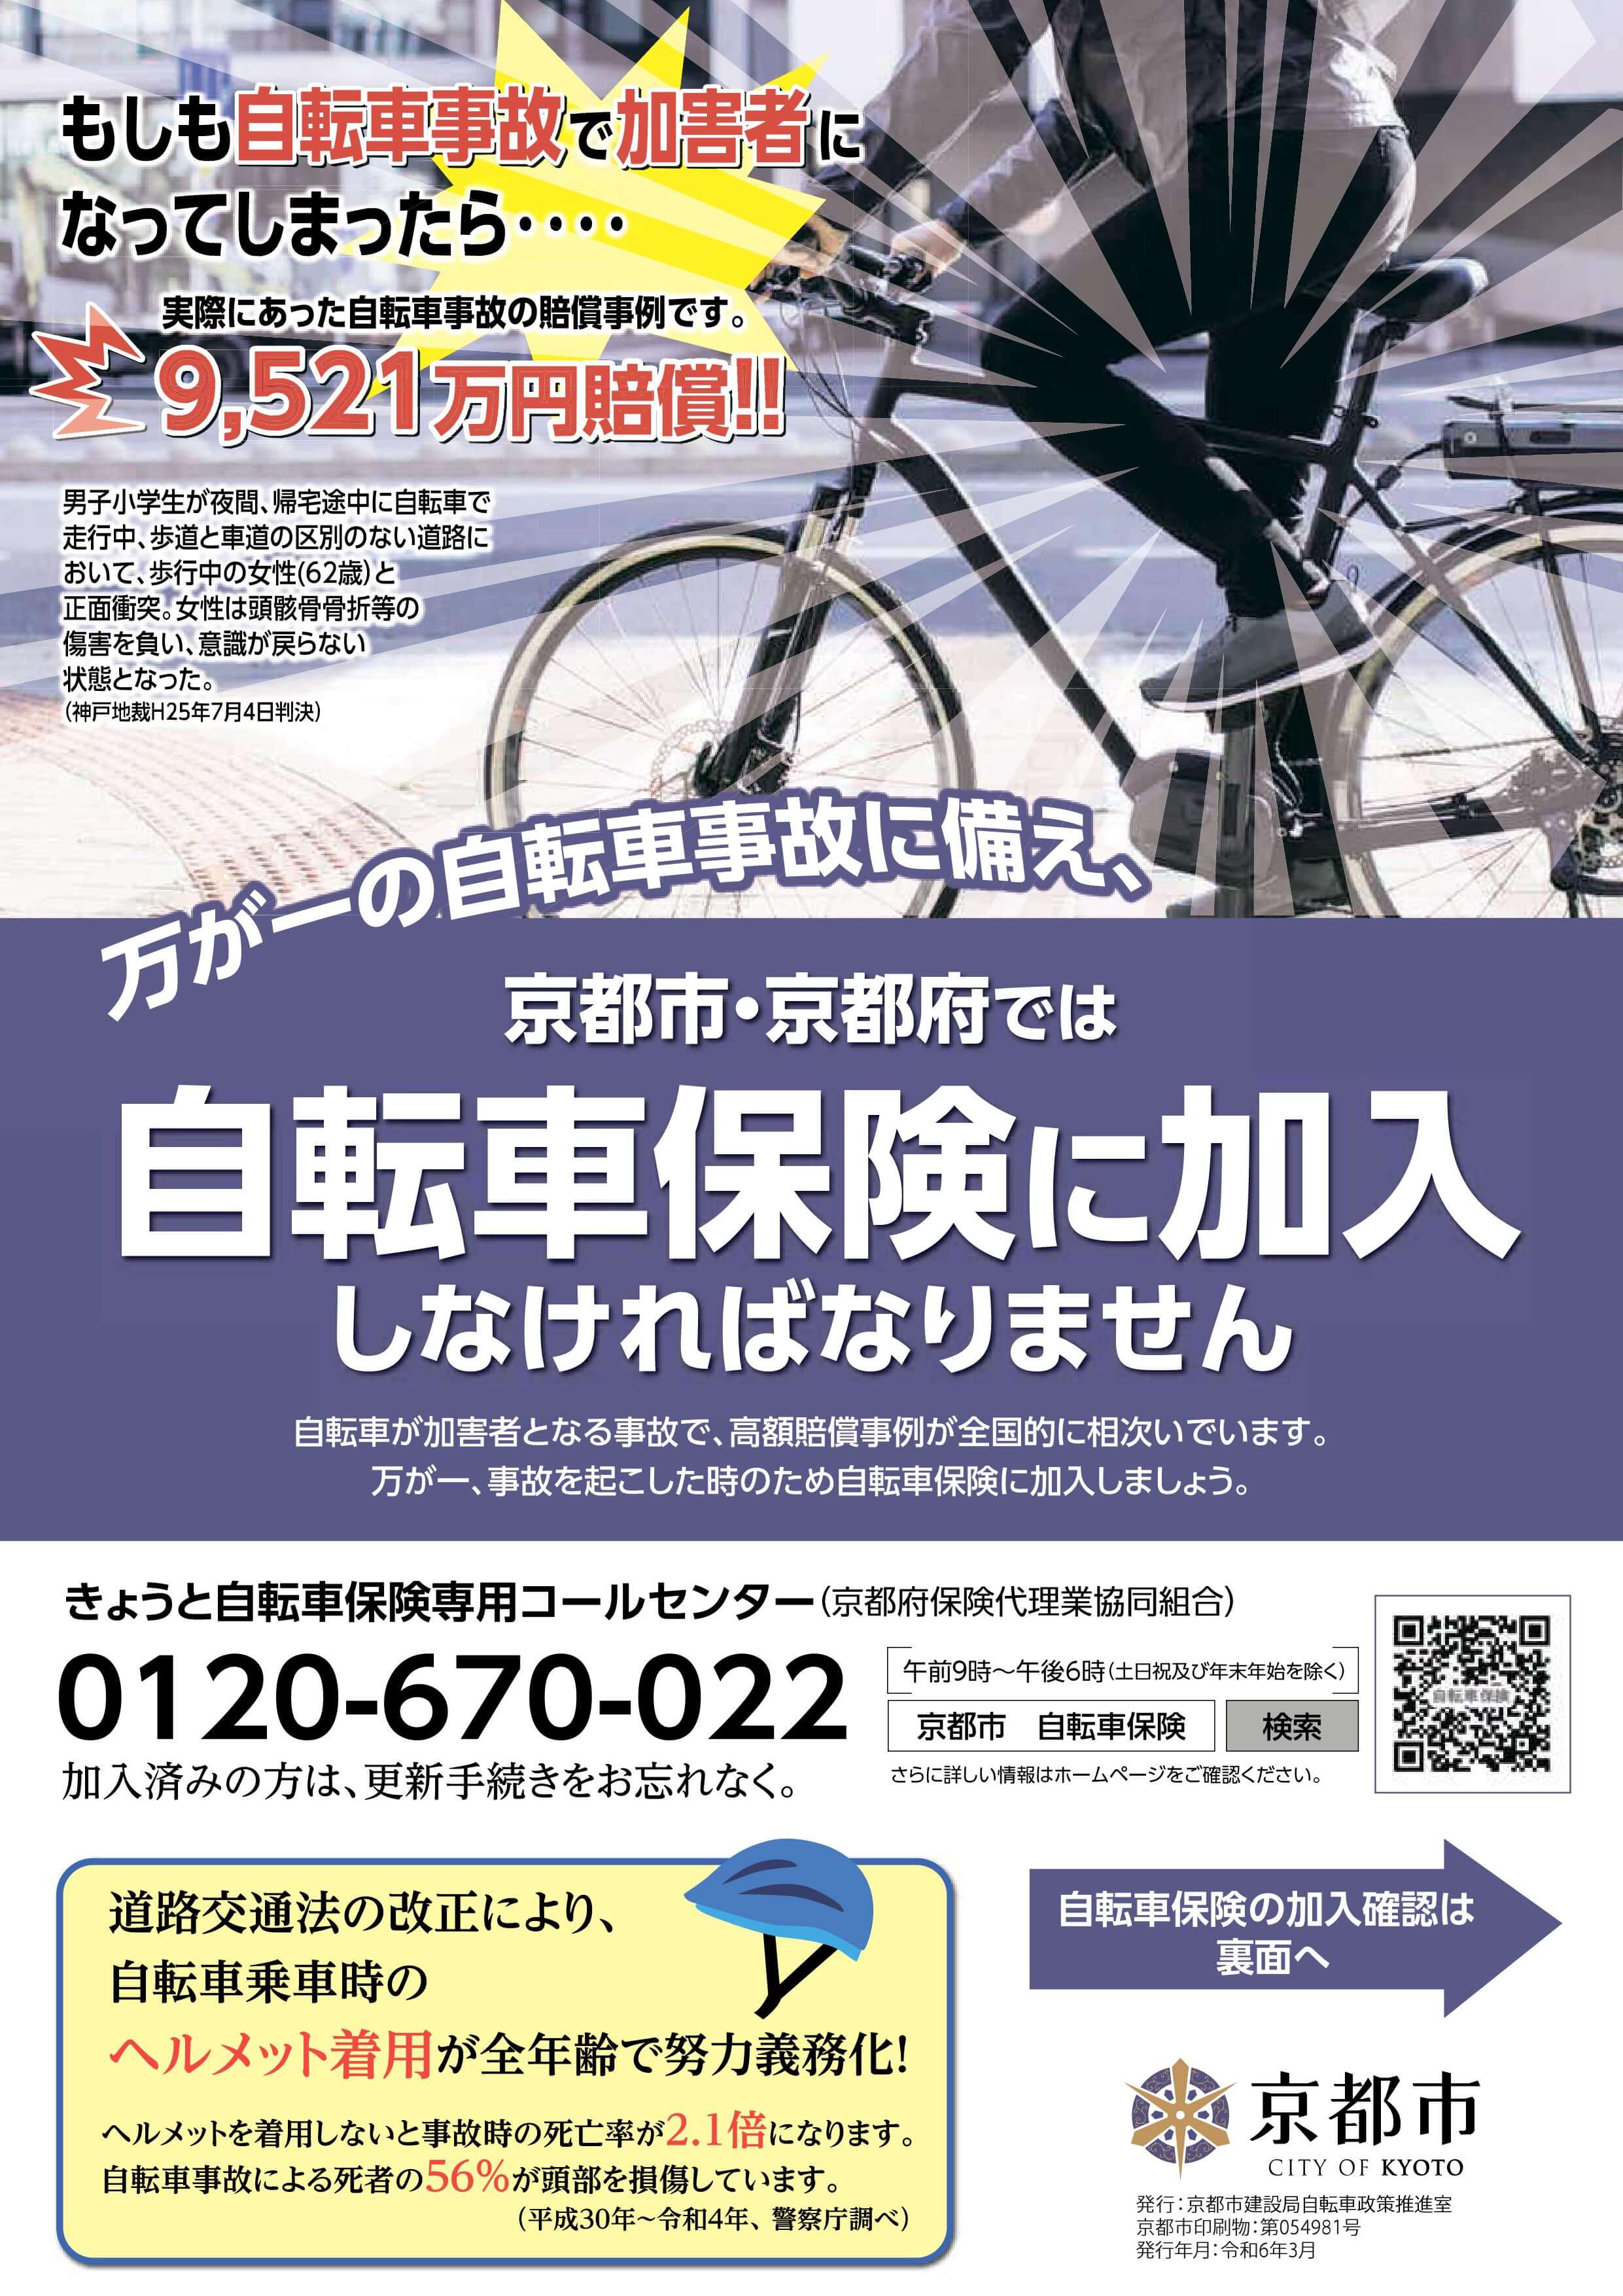 京都市は,４月１日より自転車保険義務化へ。